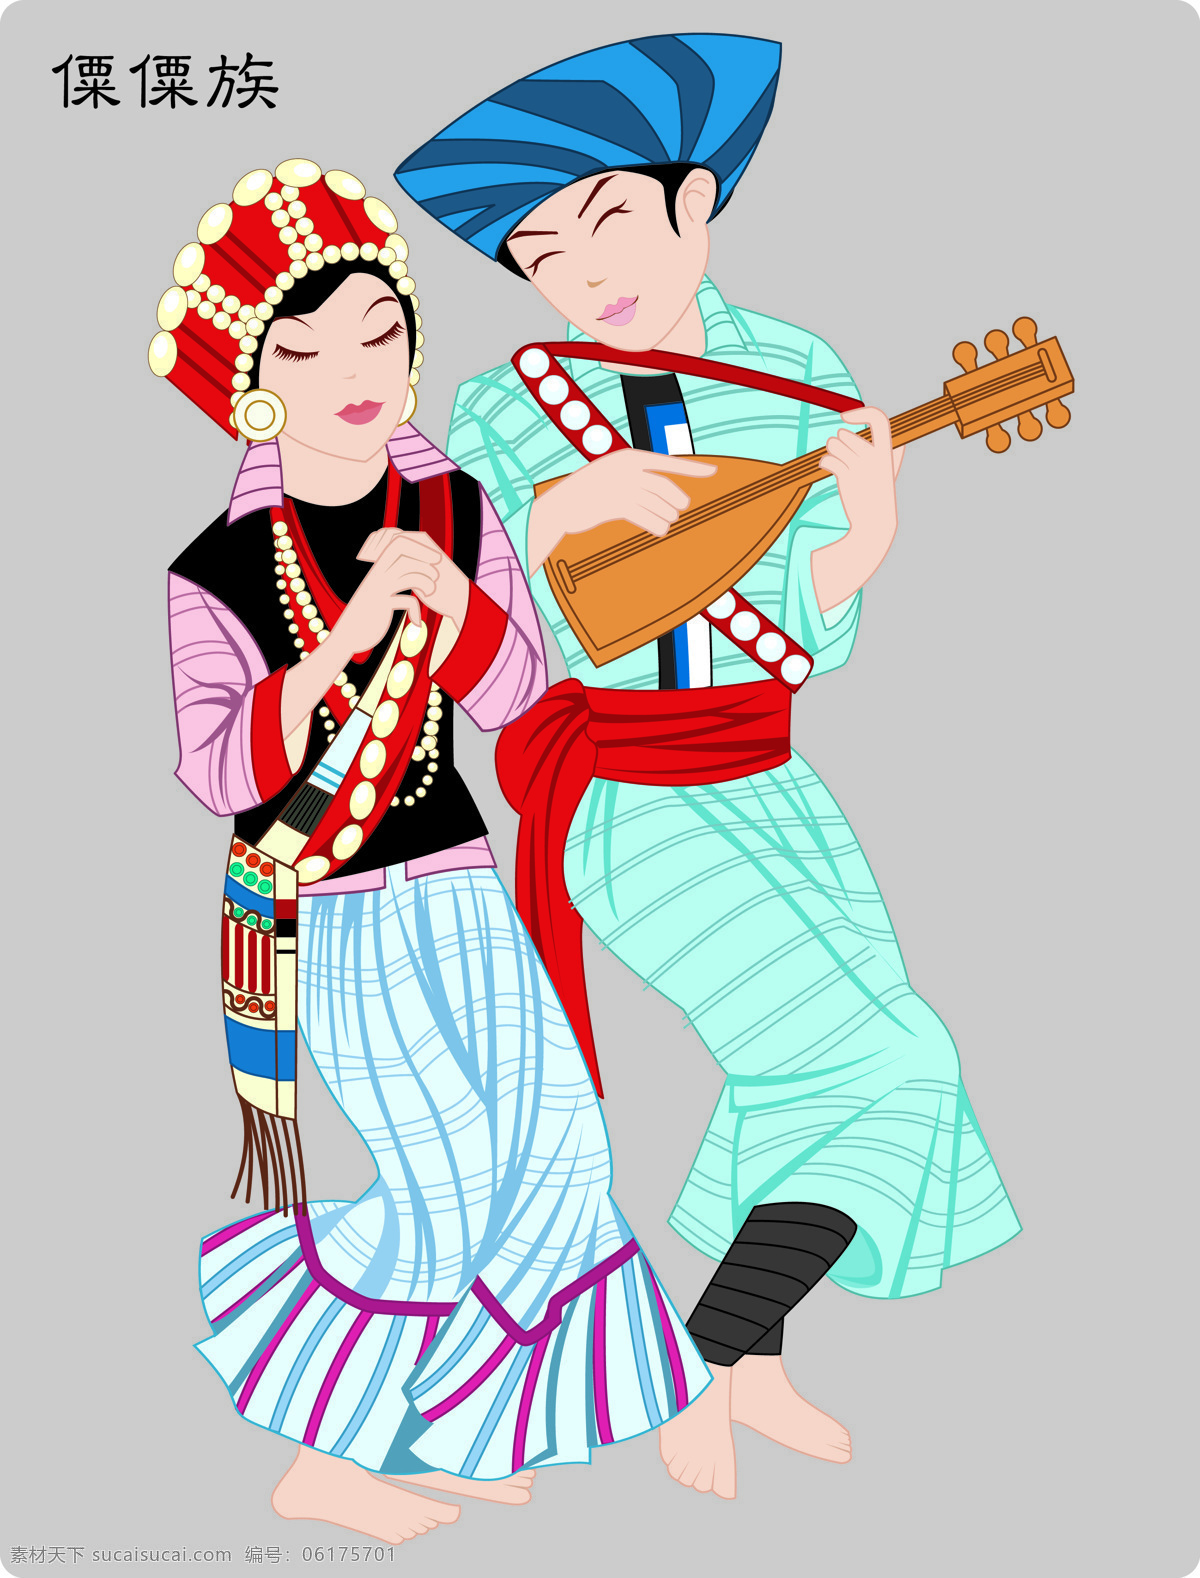 少数民族 傈僳族 民族文化 民族 56个民族 文化艺术 传统文化